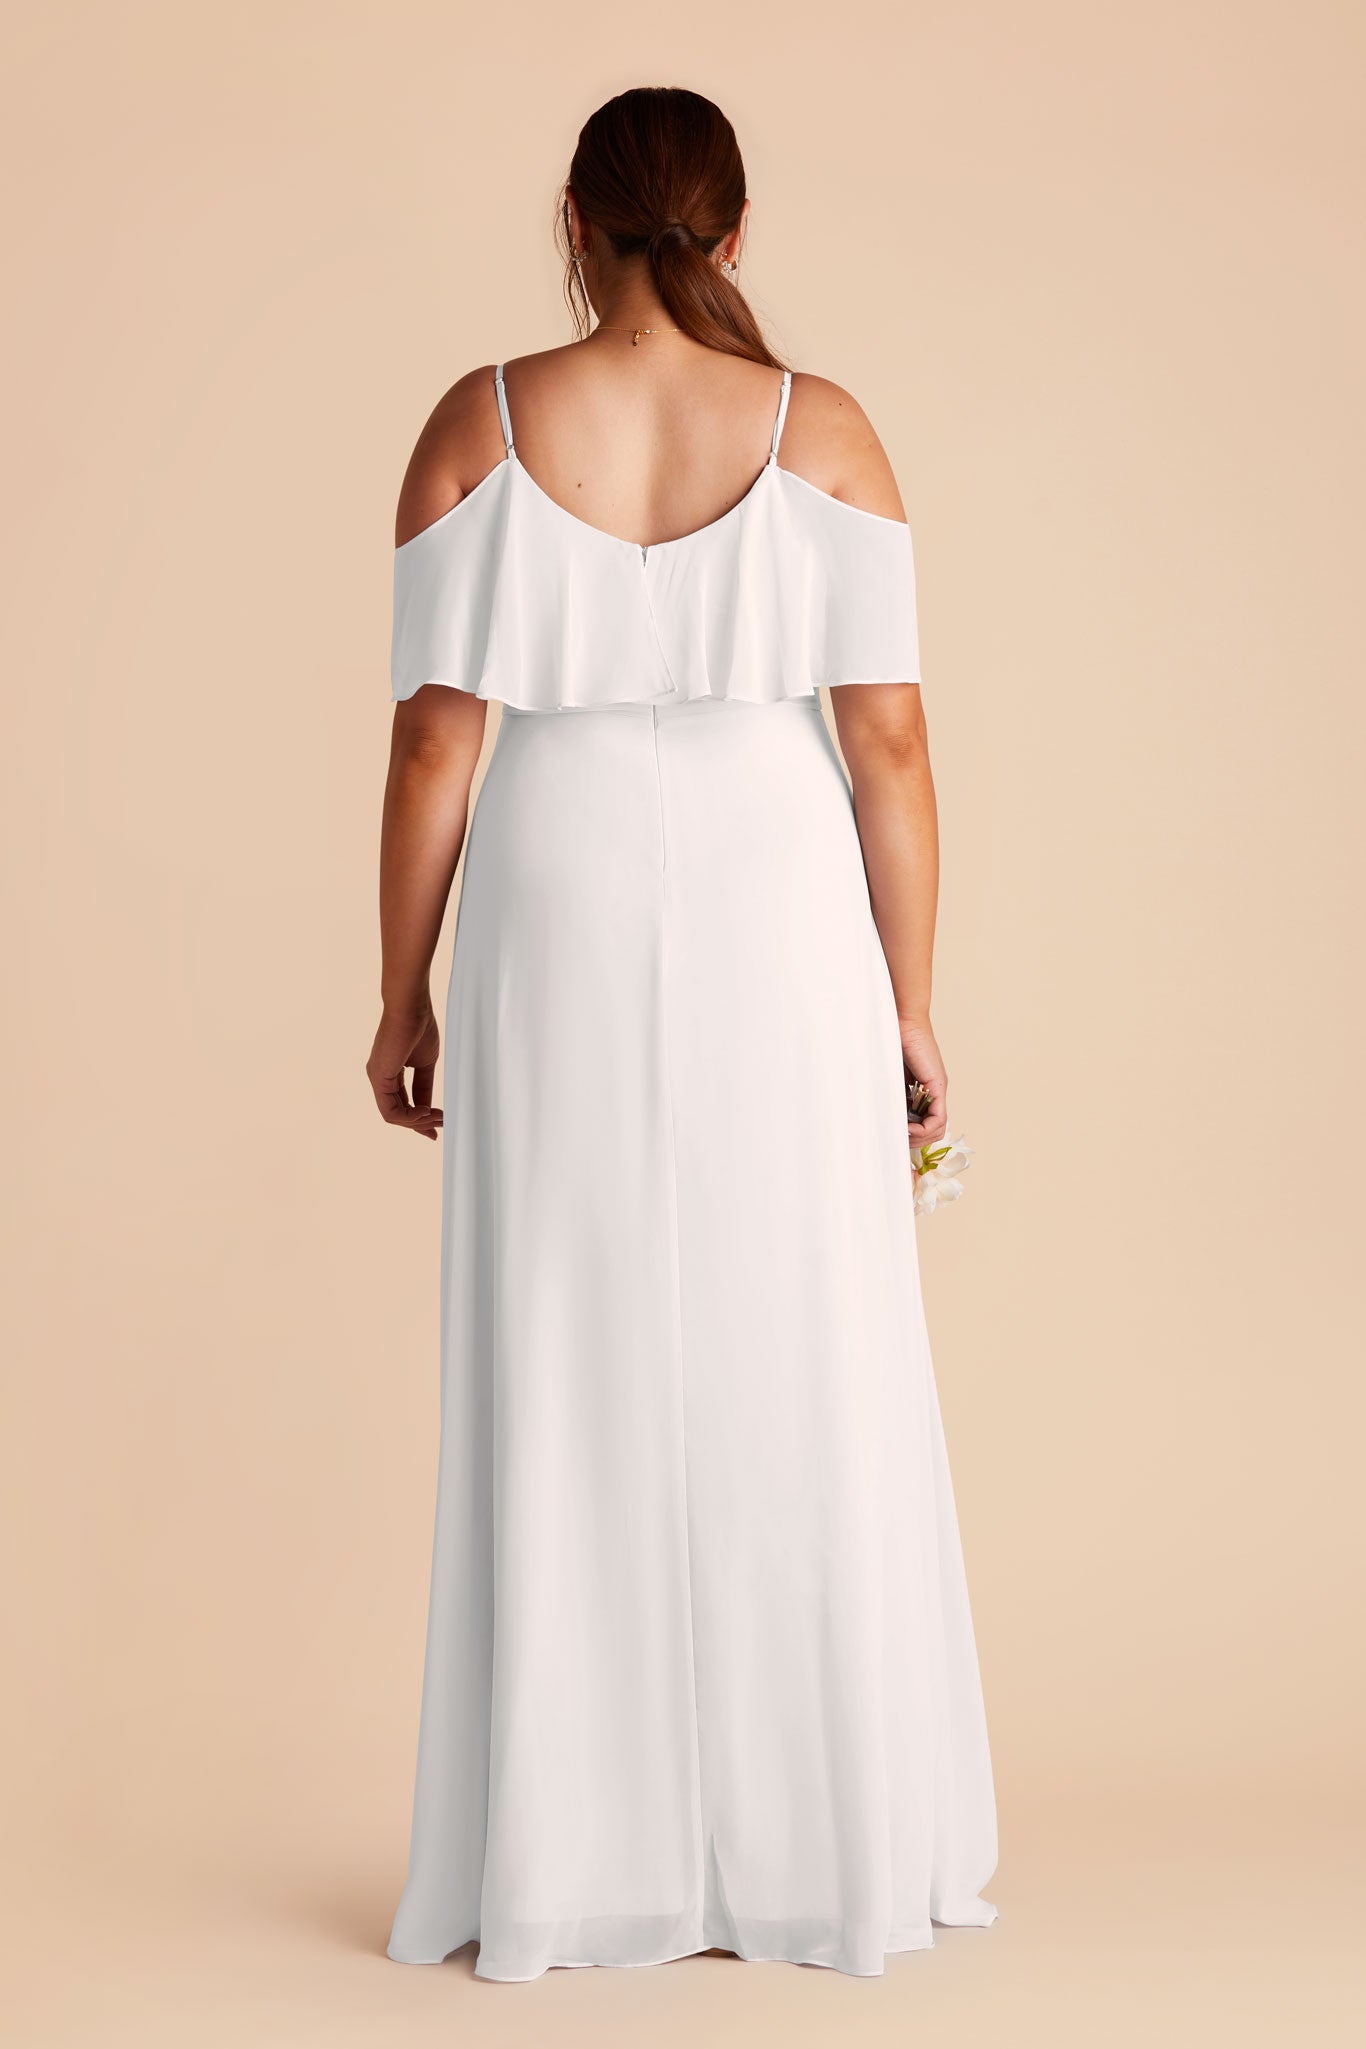 White Jane Convertible Chiffon Dress by Birdy Grey